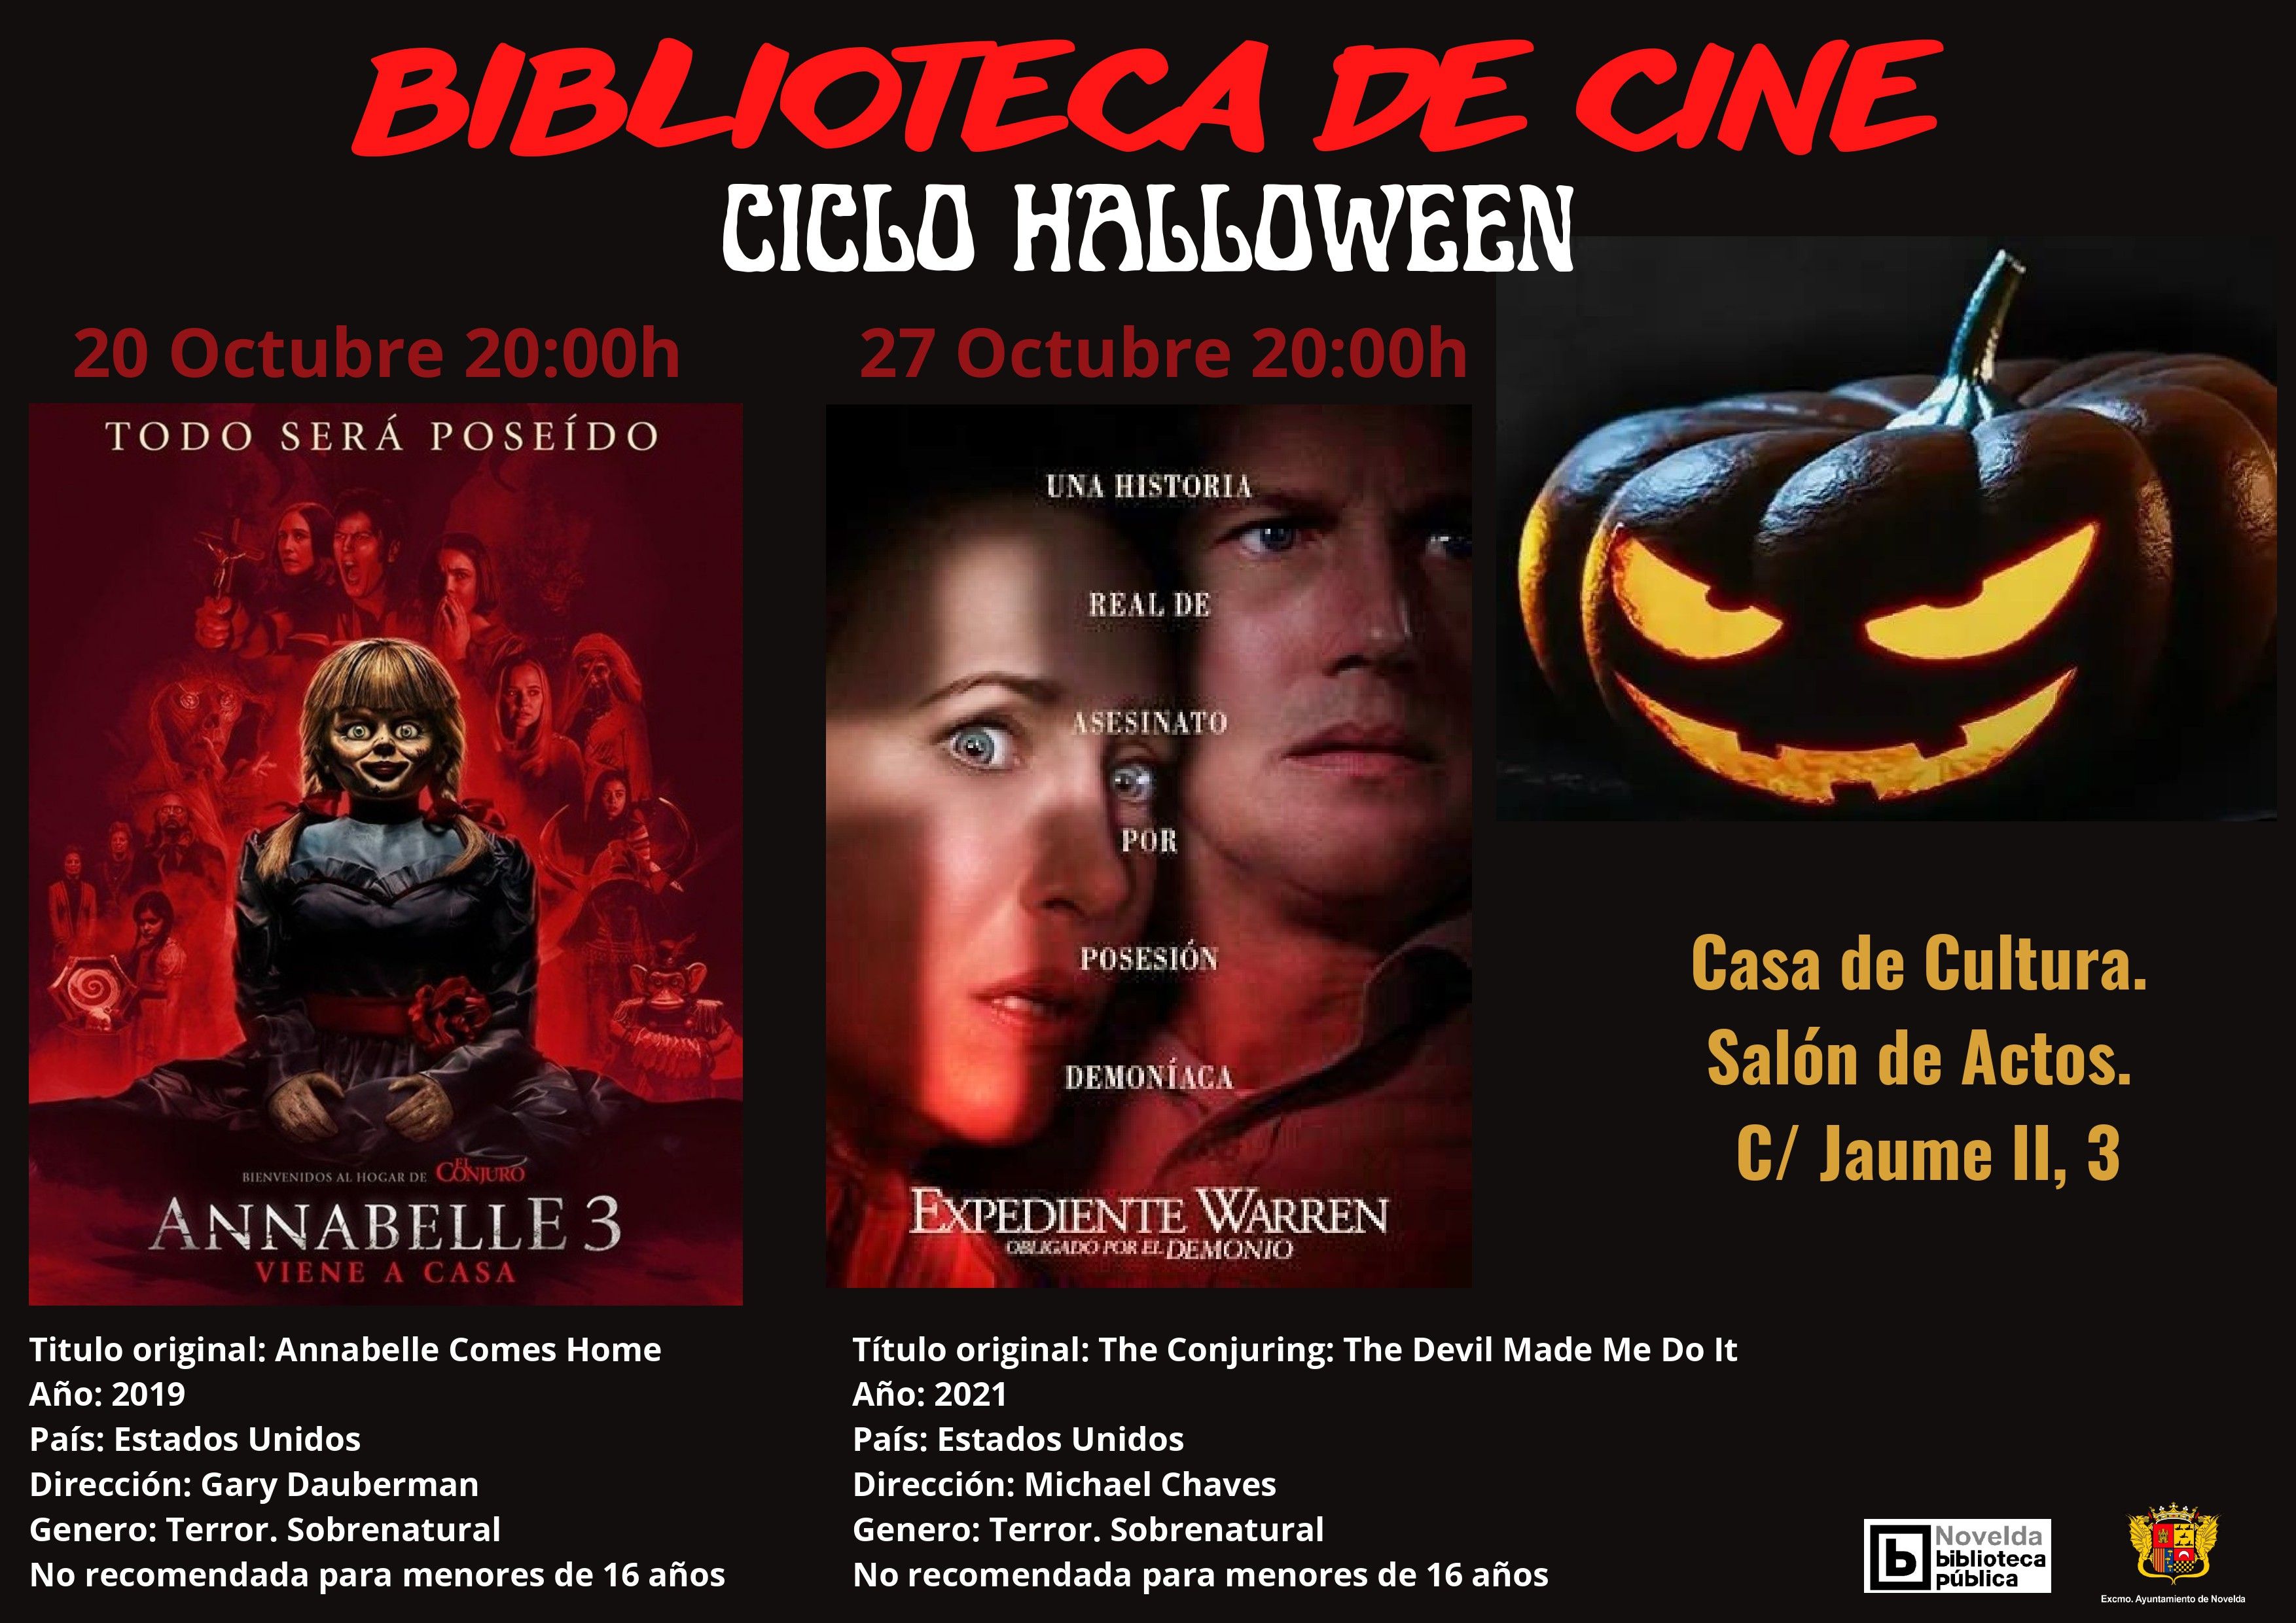 Ayuntamiento de Novelda CARTEL-CICLO-HALLOWEEN ANABELLE 3 - Cicle Halloween de la Biblioteca de Cinema 